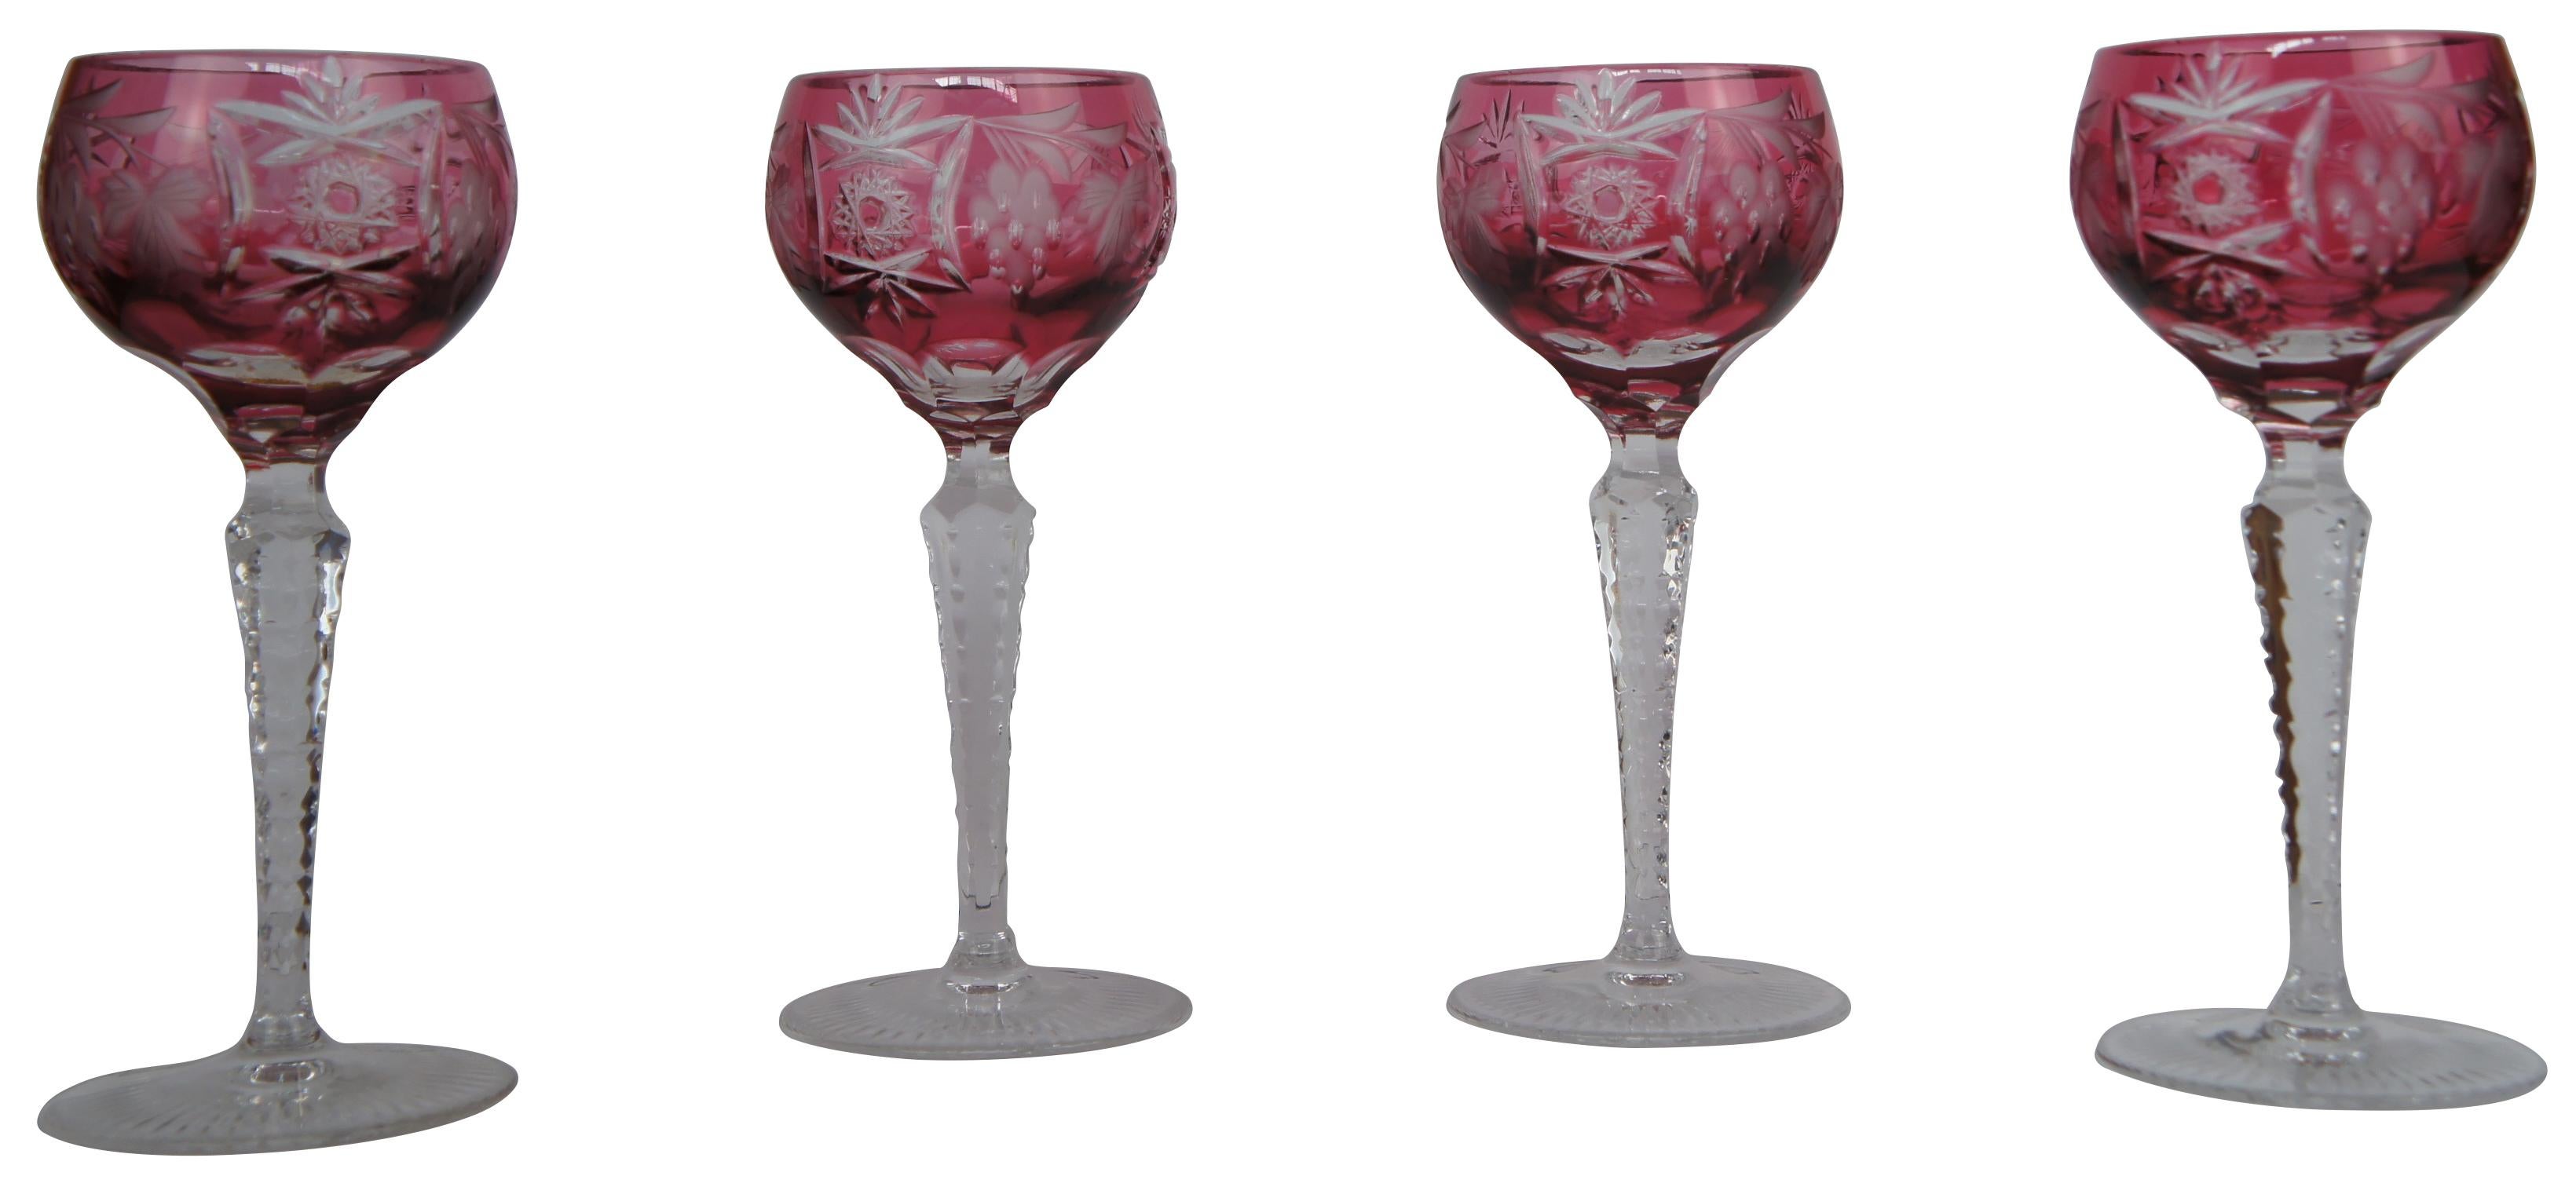 Set de bar vintage Nachtmann Traube bohémien / bavarois comprenant quatre verres à liqueur en cristal (jarret de vin) et une carafe assortie avec cranberry (rouge / rose) taillée en finition transparente représentant des raisins et des